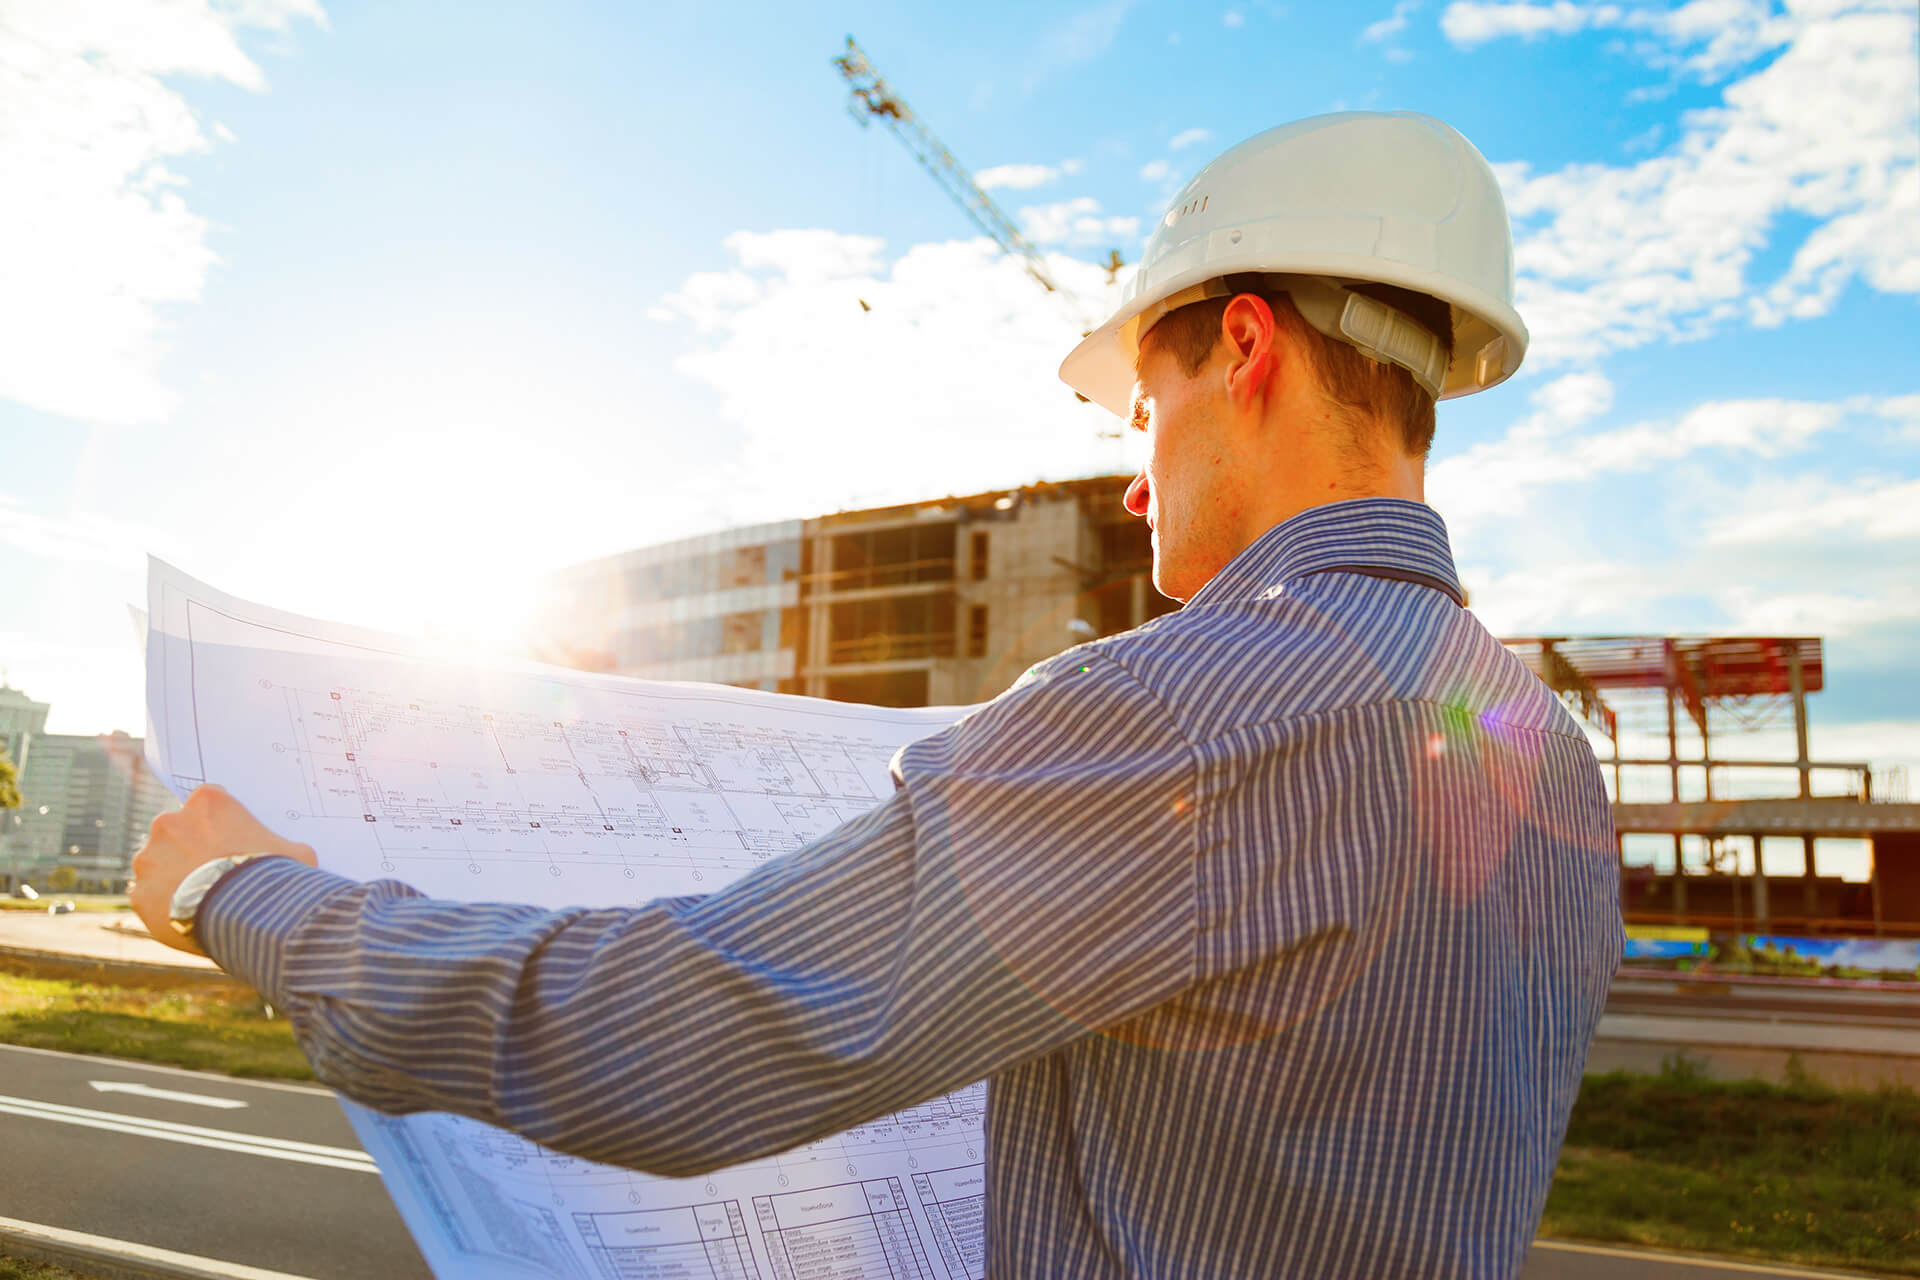 Construction Project Management - Construction Foreman reading blueprints